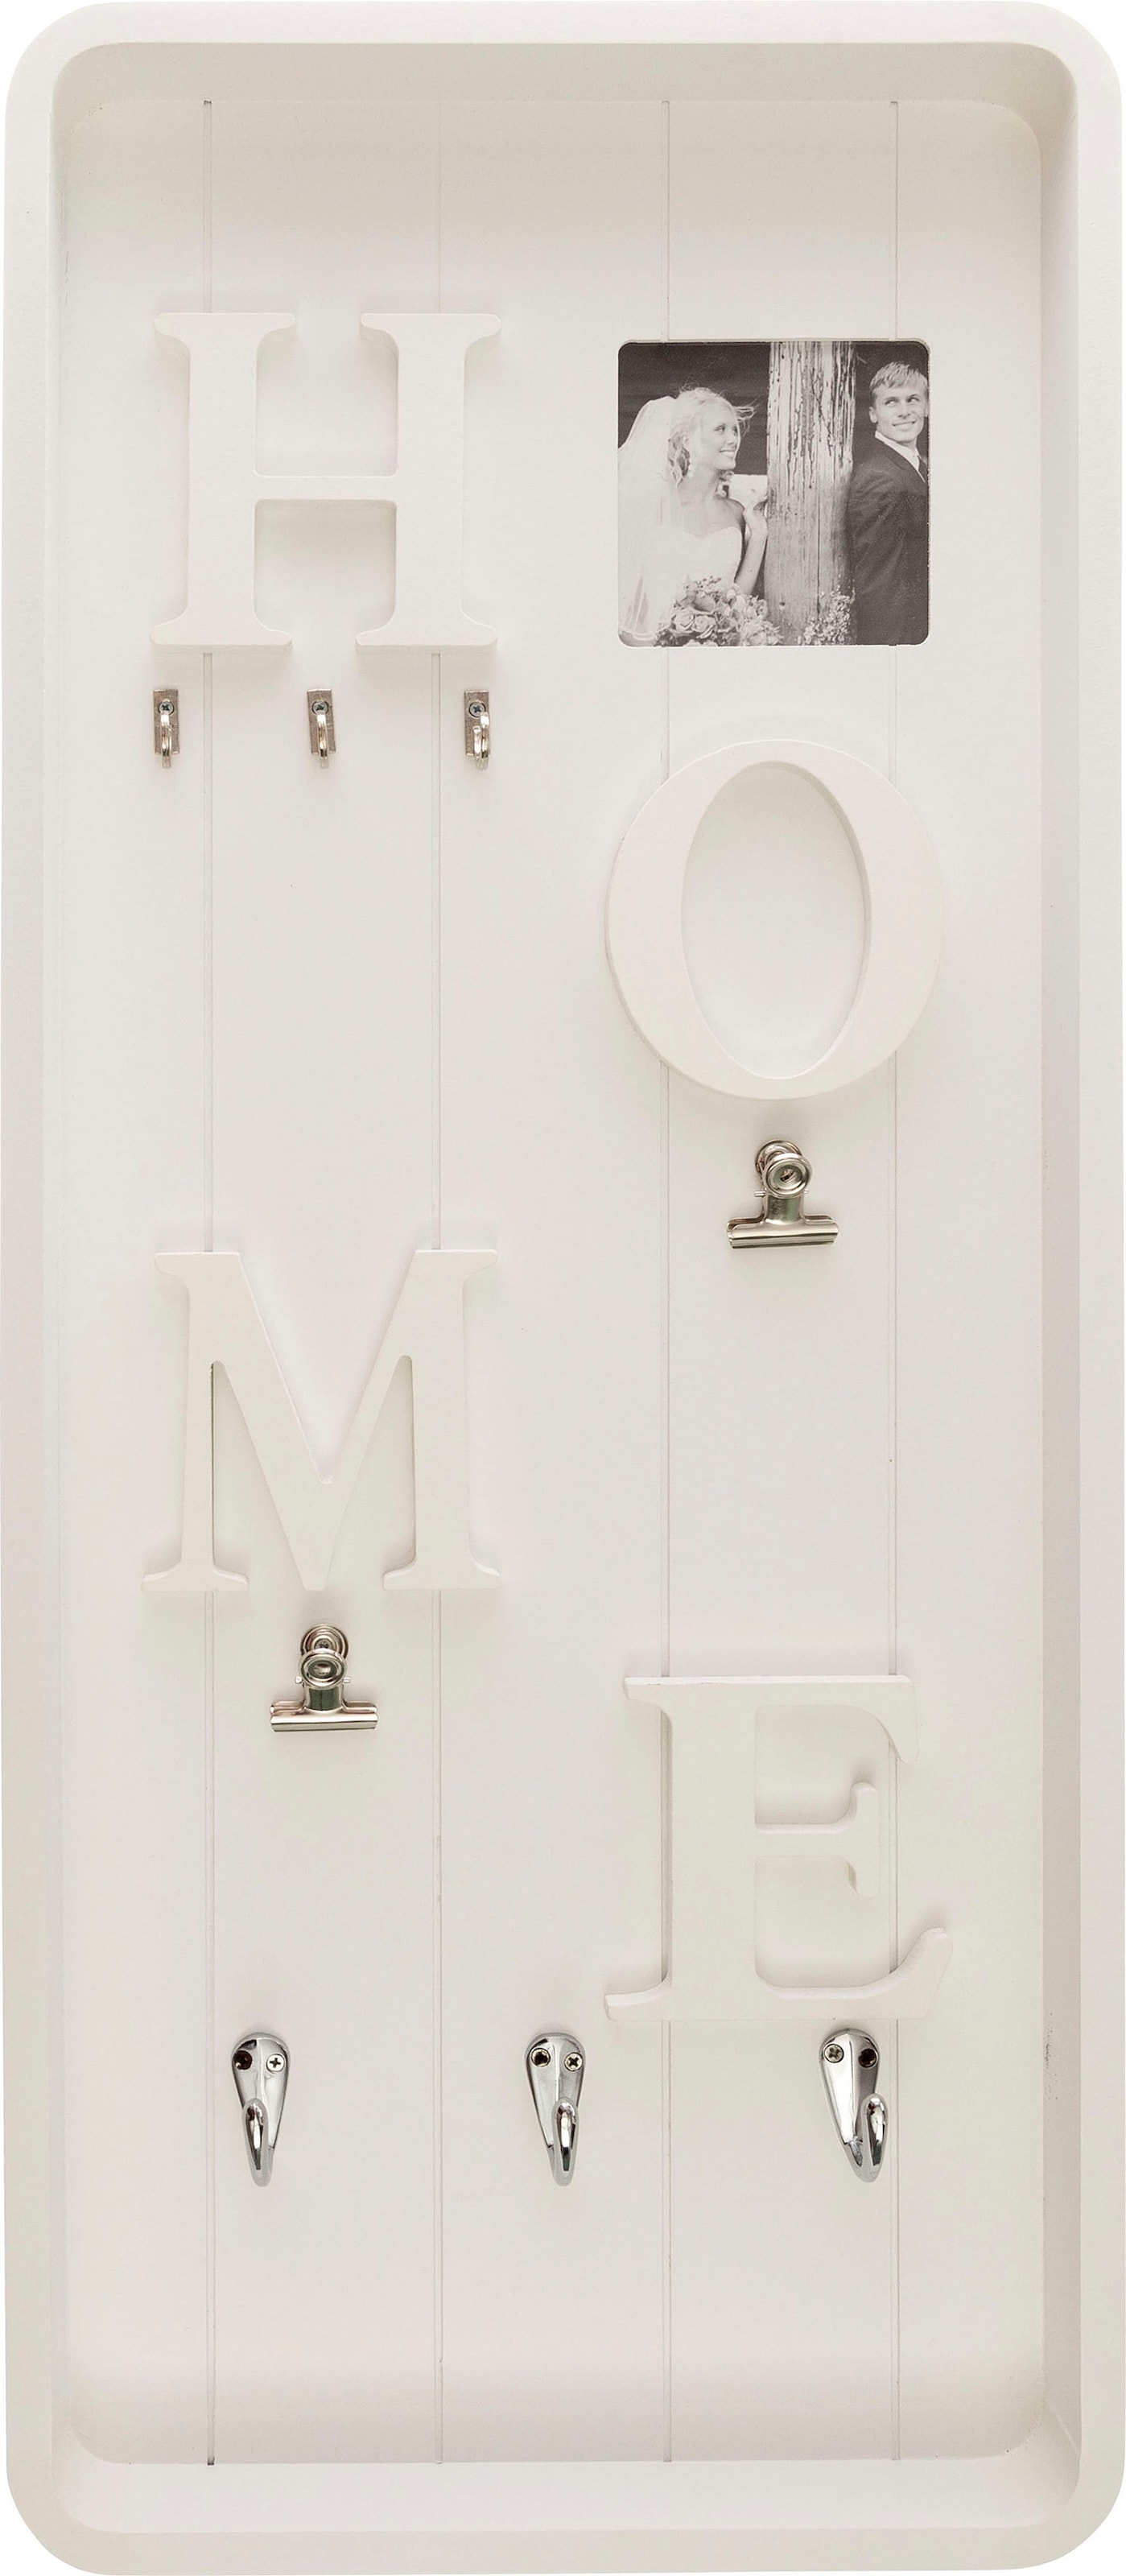 Myflair Möbel & Accessoires Memoboard »Valerina, weiß«, Schlüsselbrett, mit Klemmen & Haken, mit Schriftzug